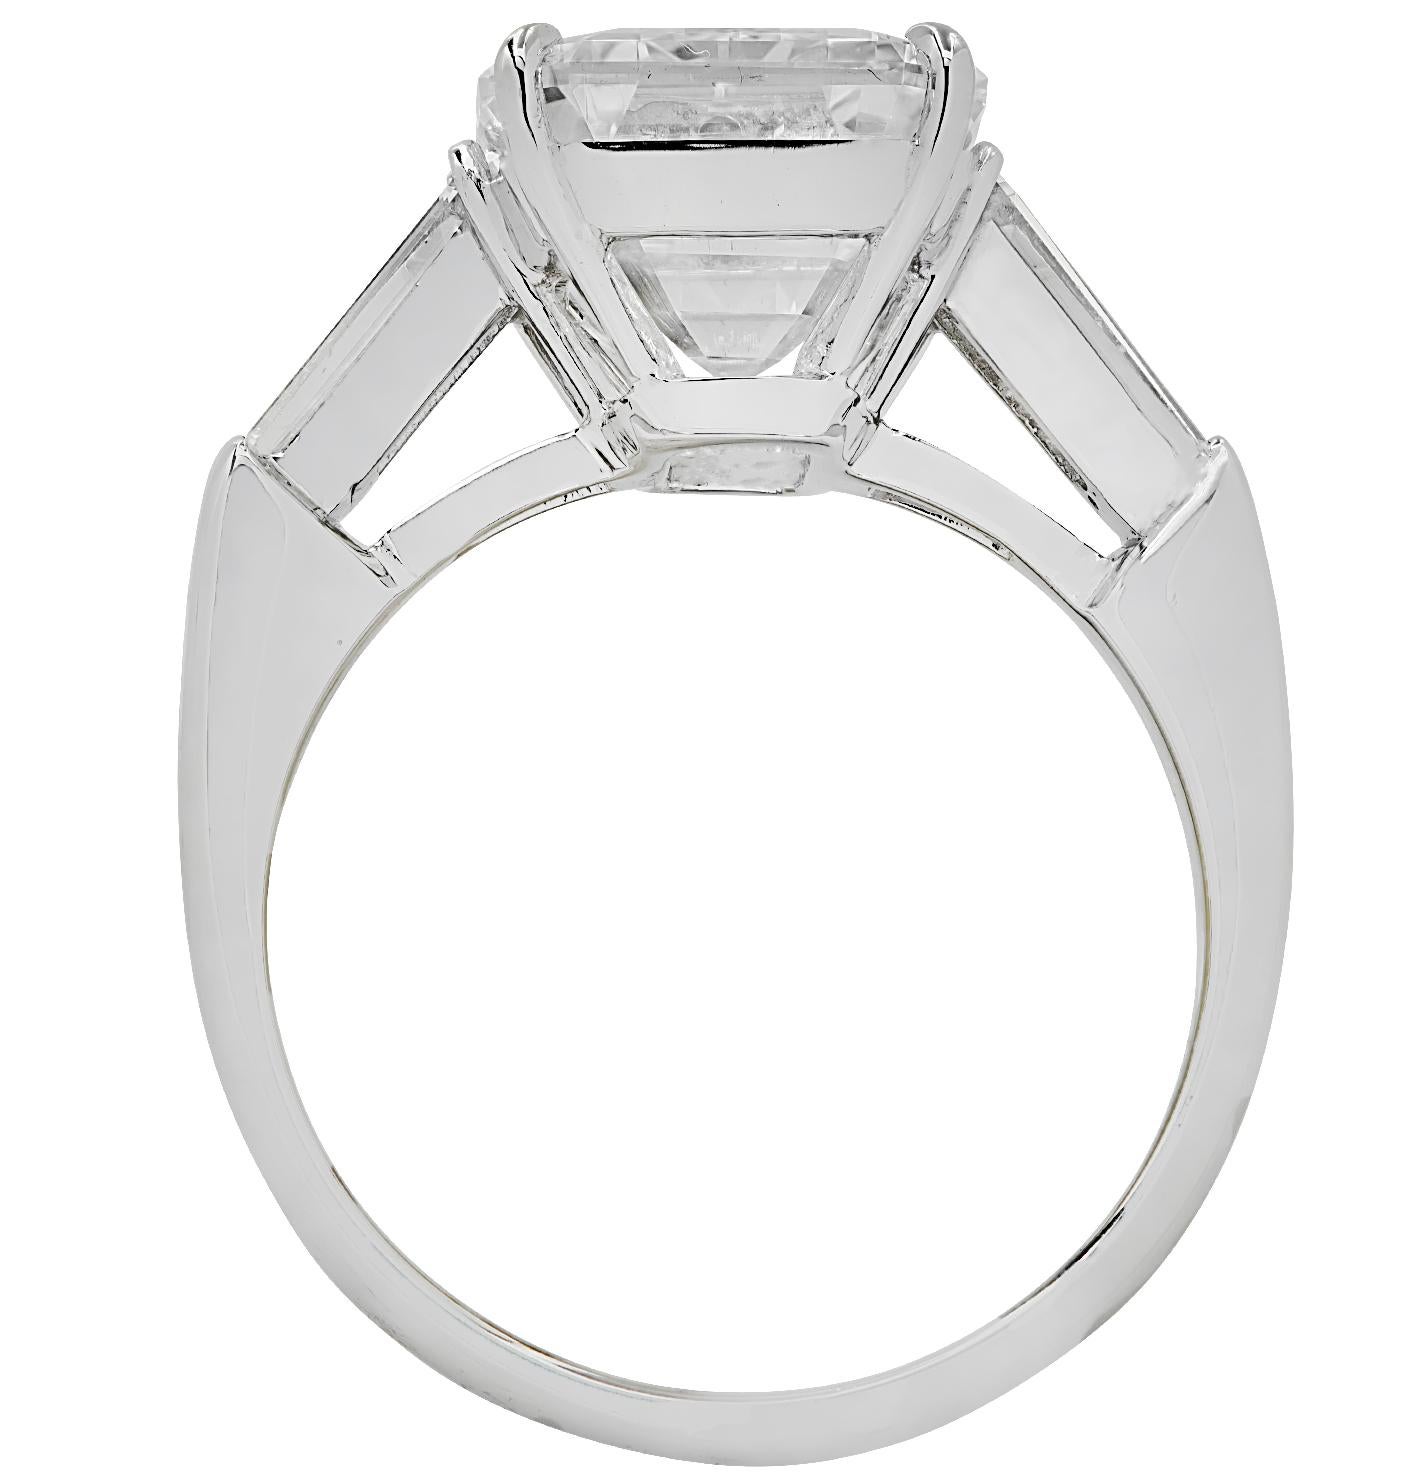 2 carat emerald cut diamond ring on hand